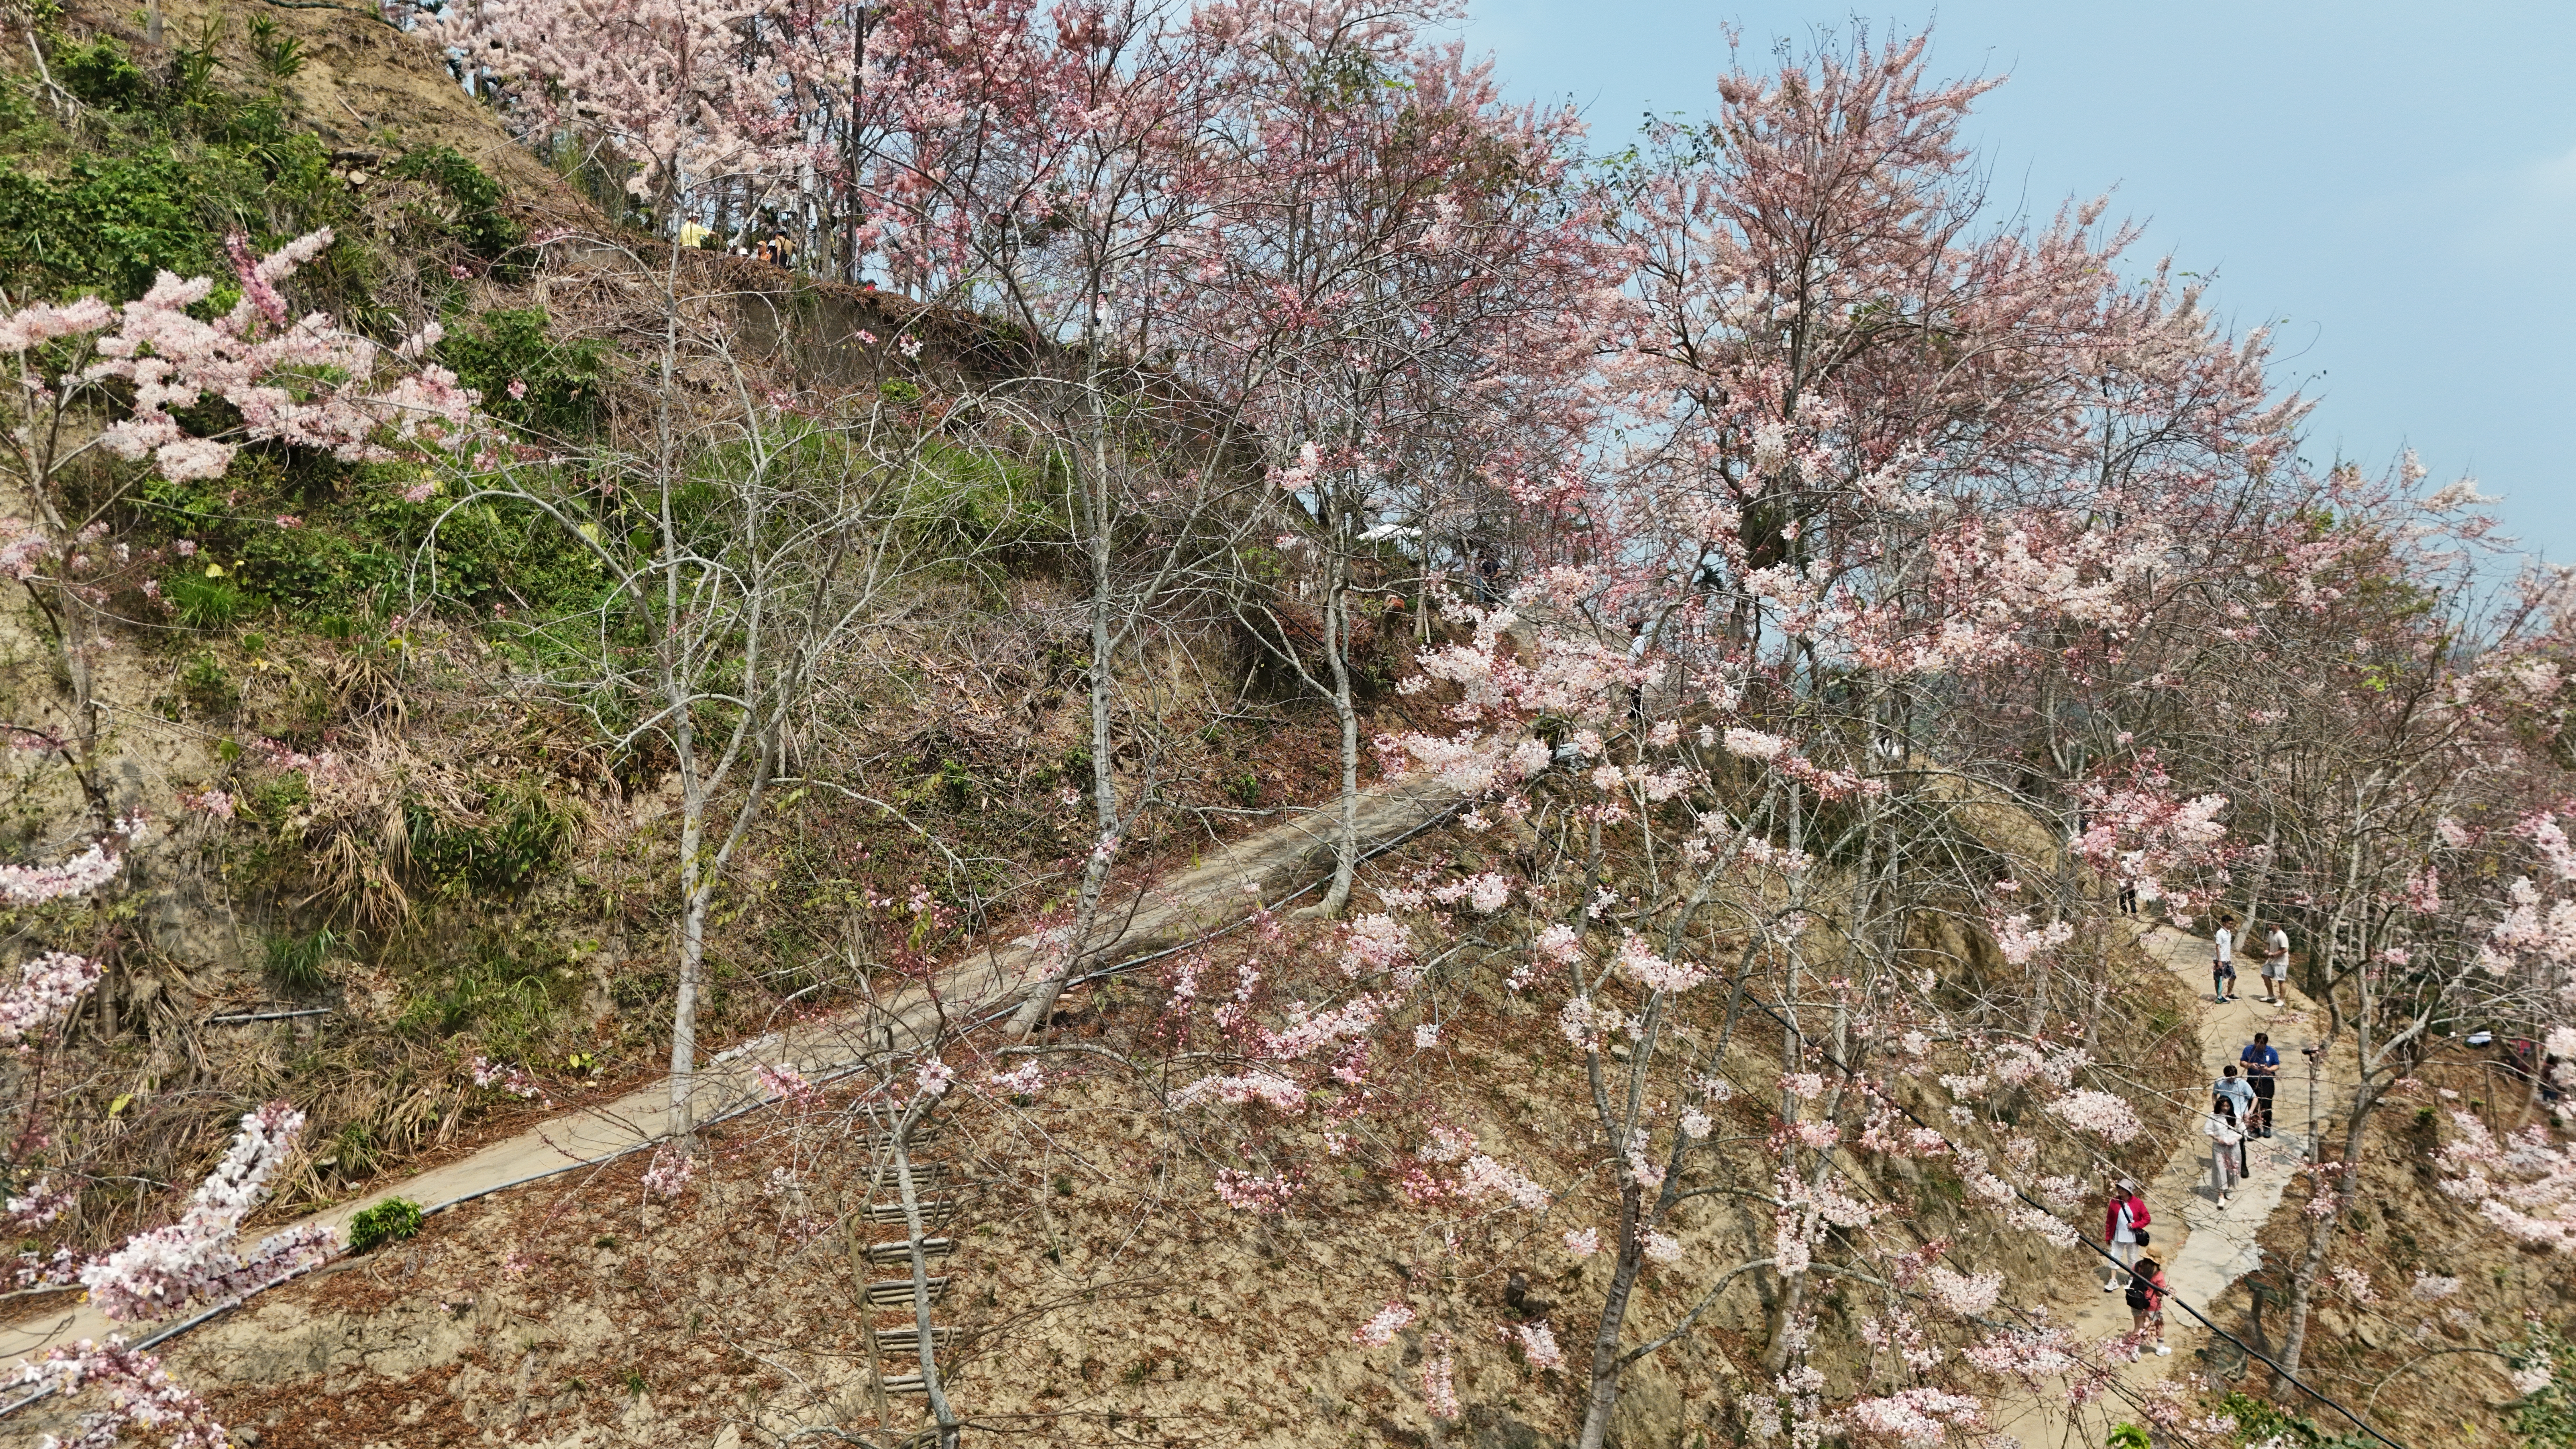 嘉义县竹崎乡粉红花旗木盛开， 预计花期将持续1个月。记者黄于凡／摄影